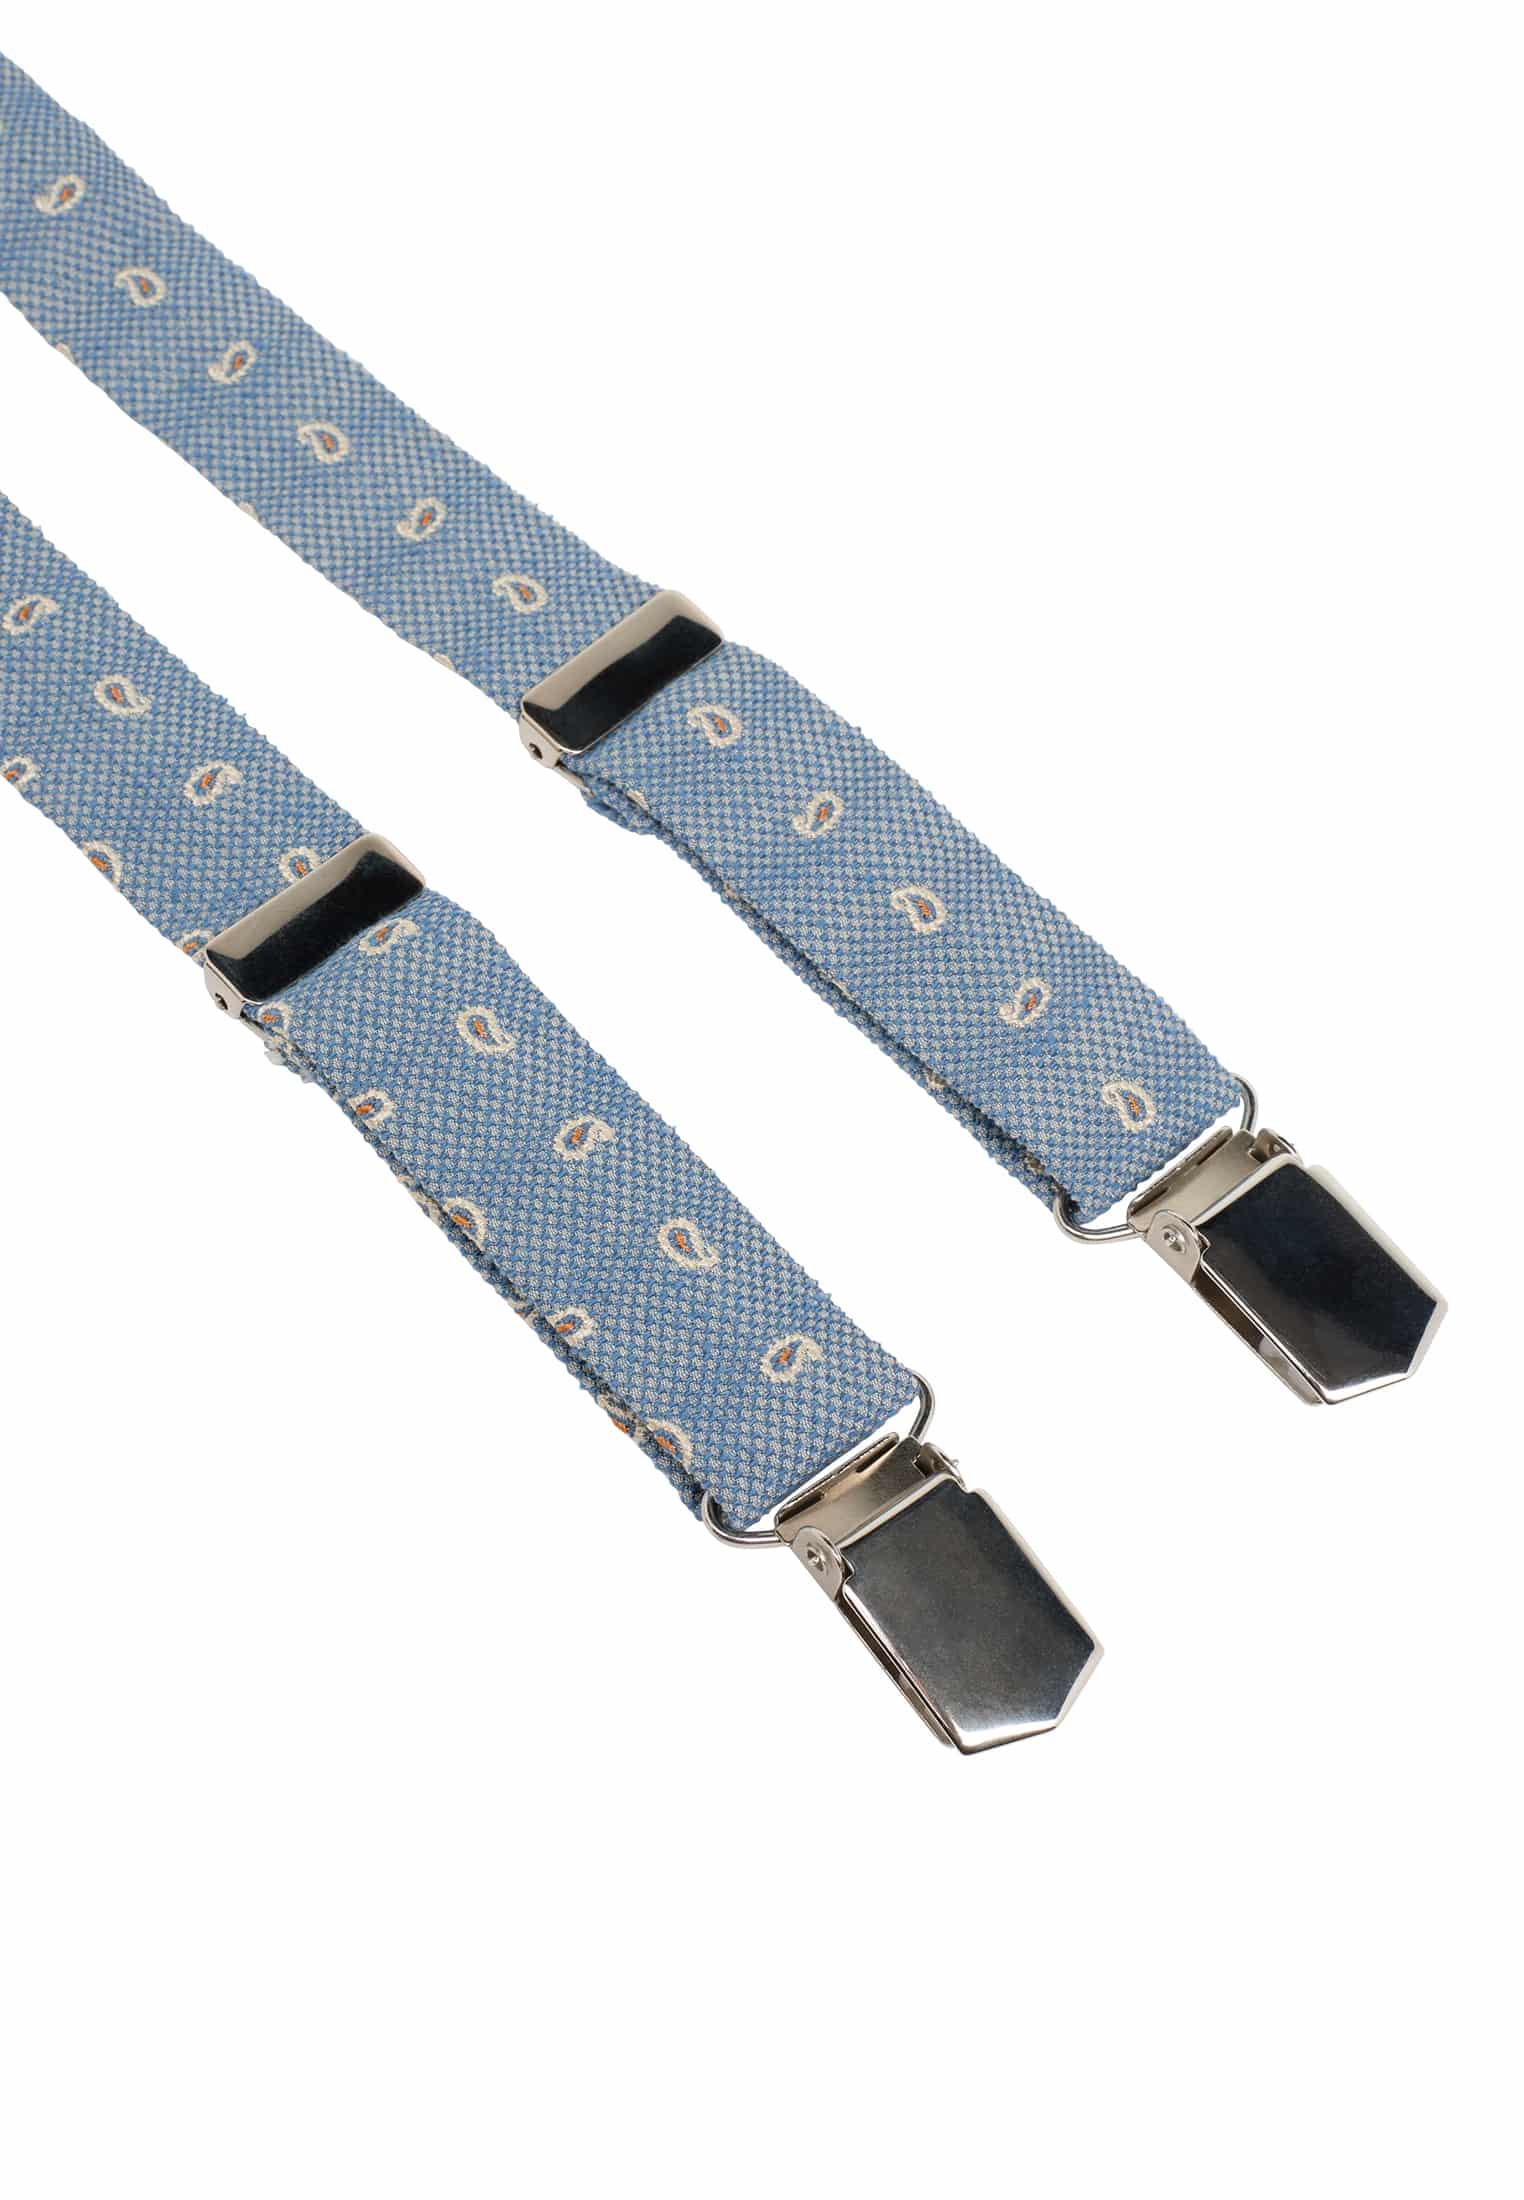 Braces in blue patterned